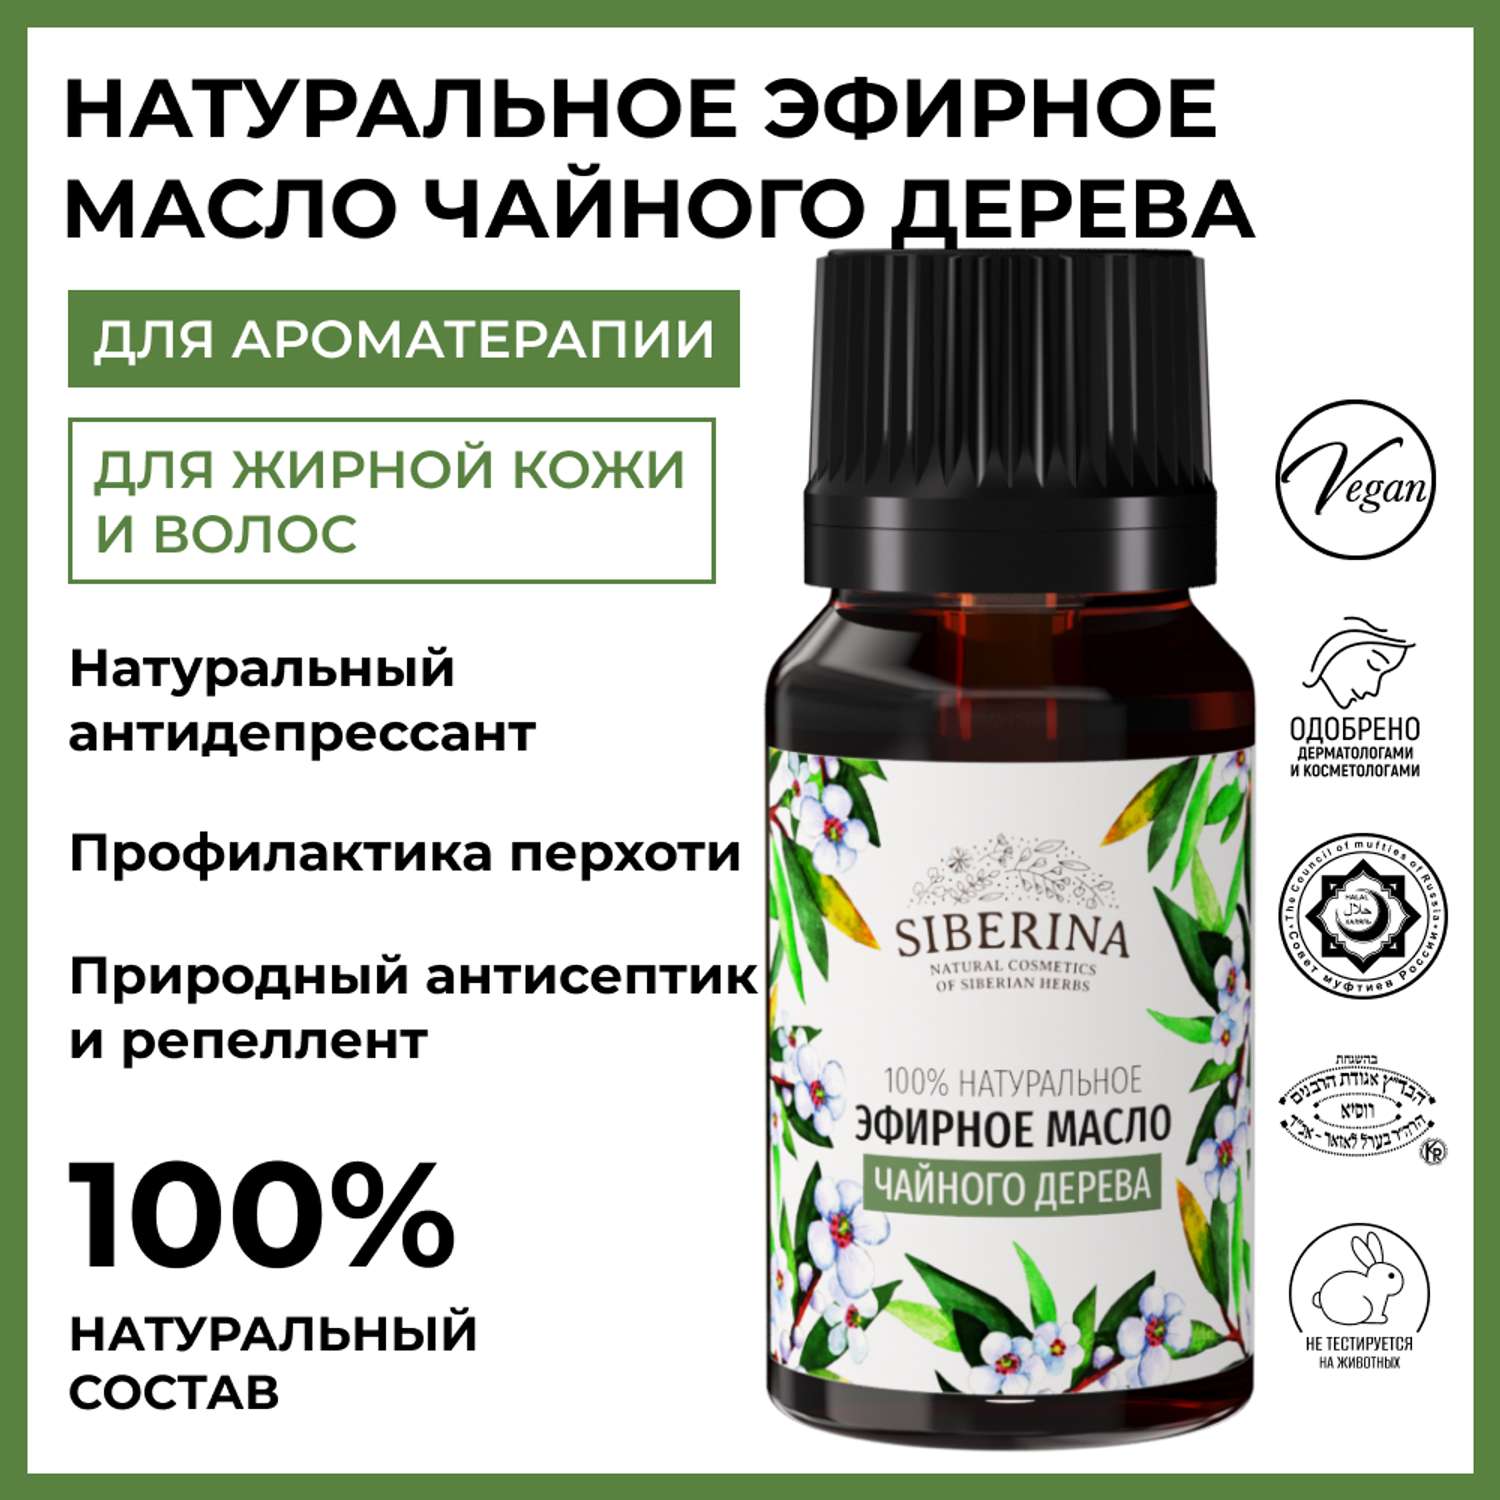 Эфирное масло Siberina натуральное «Чайного дерева» с антибактериальным и антисептическим действием 8 мл - фото 2